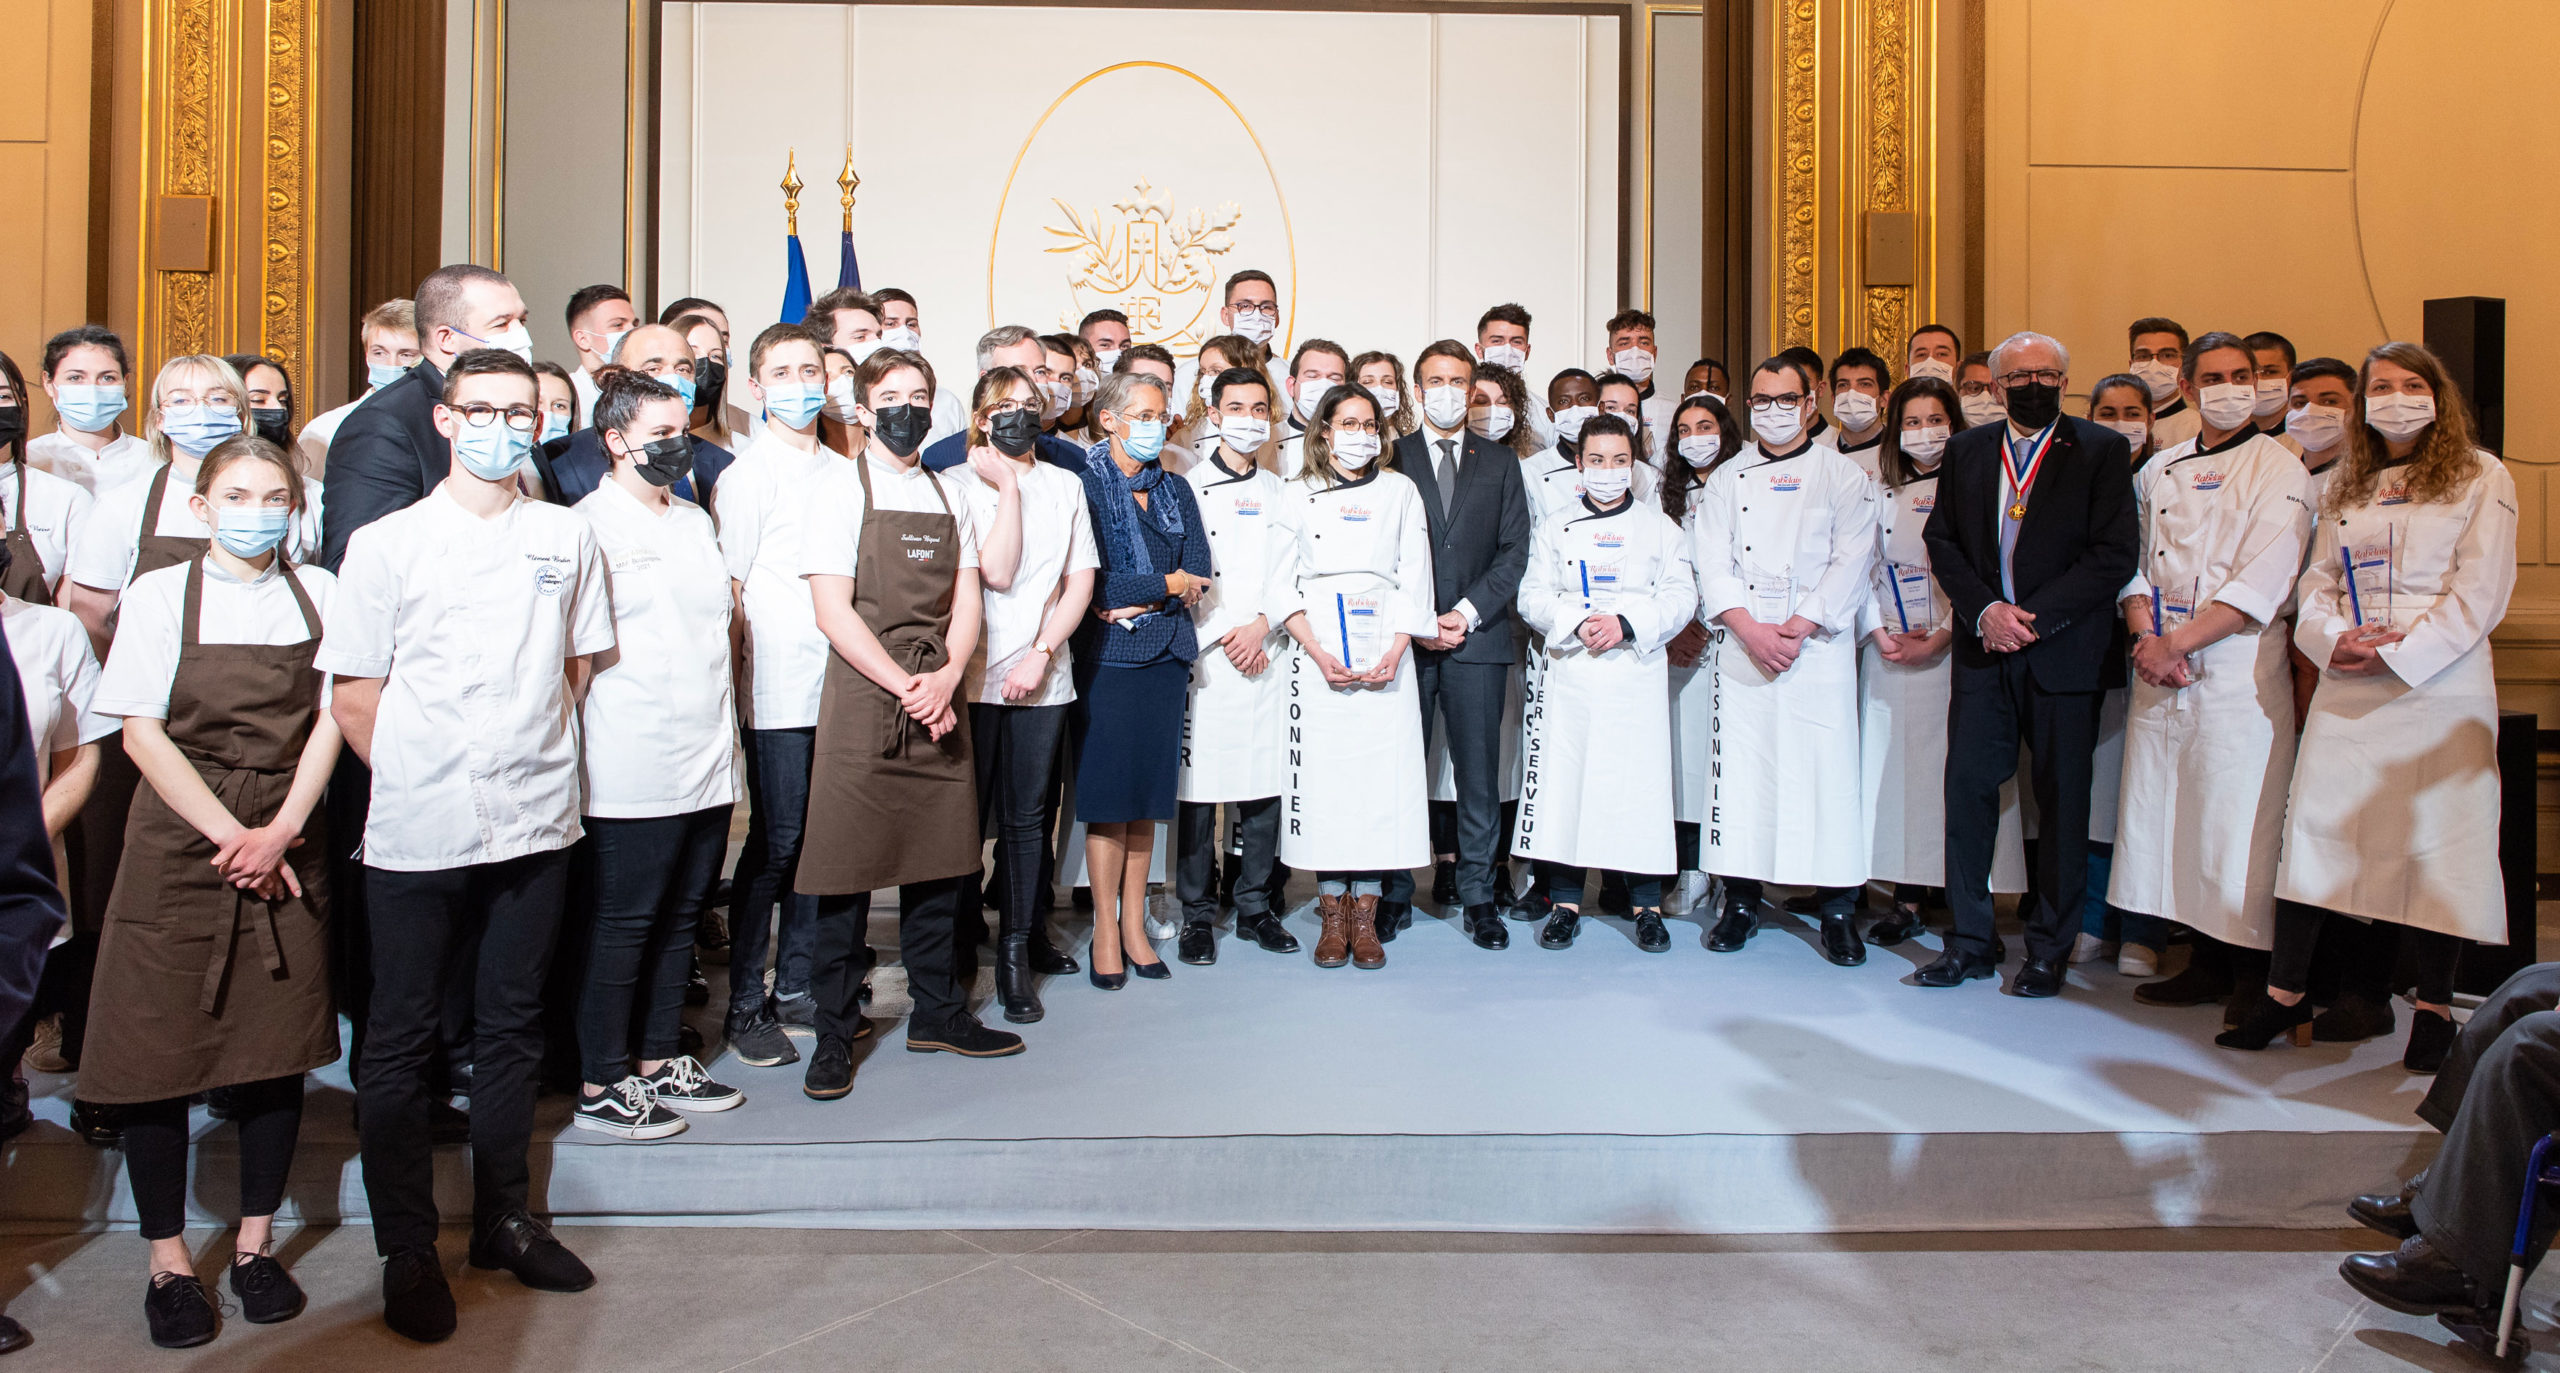 Réception des artisans boulangers-pâtissiers pour la traditionnelle cérémonie des voeux à l’Élysée 12 janvier 2022